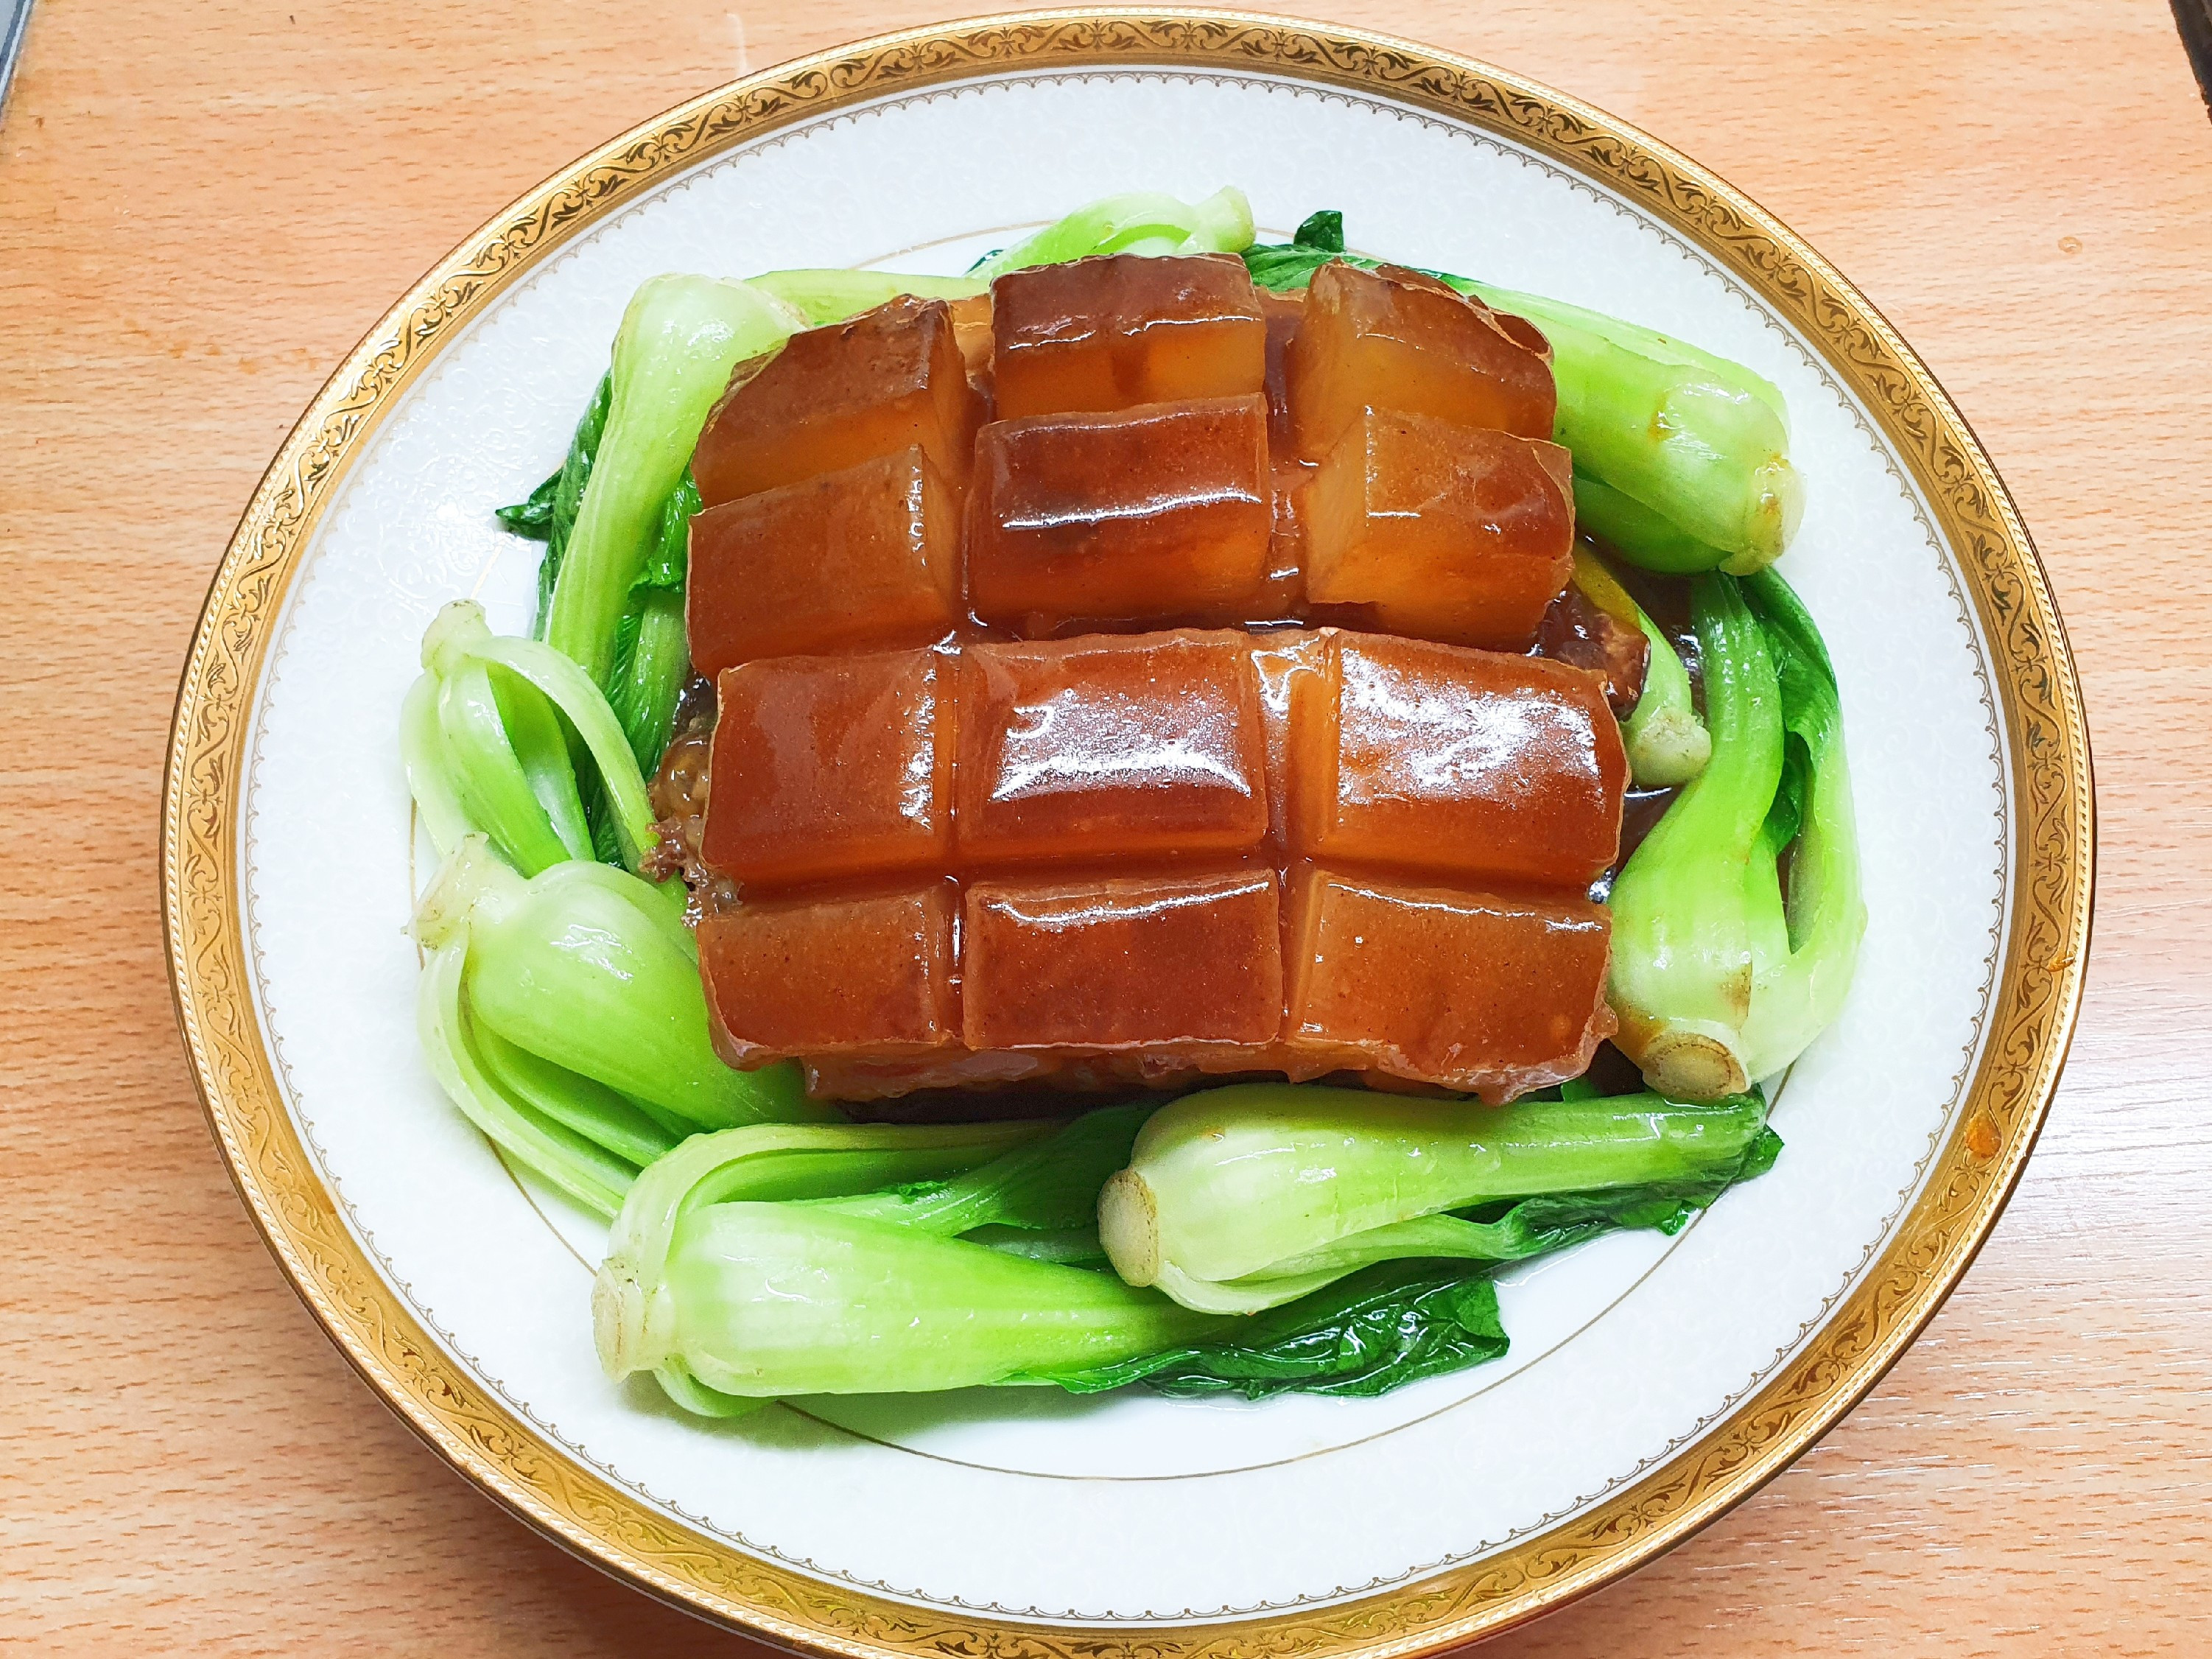 素食年菜-東坡肉
吃素有福
南無阿彌陀佛